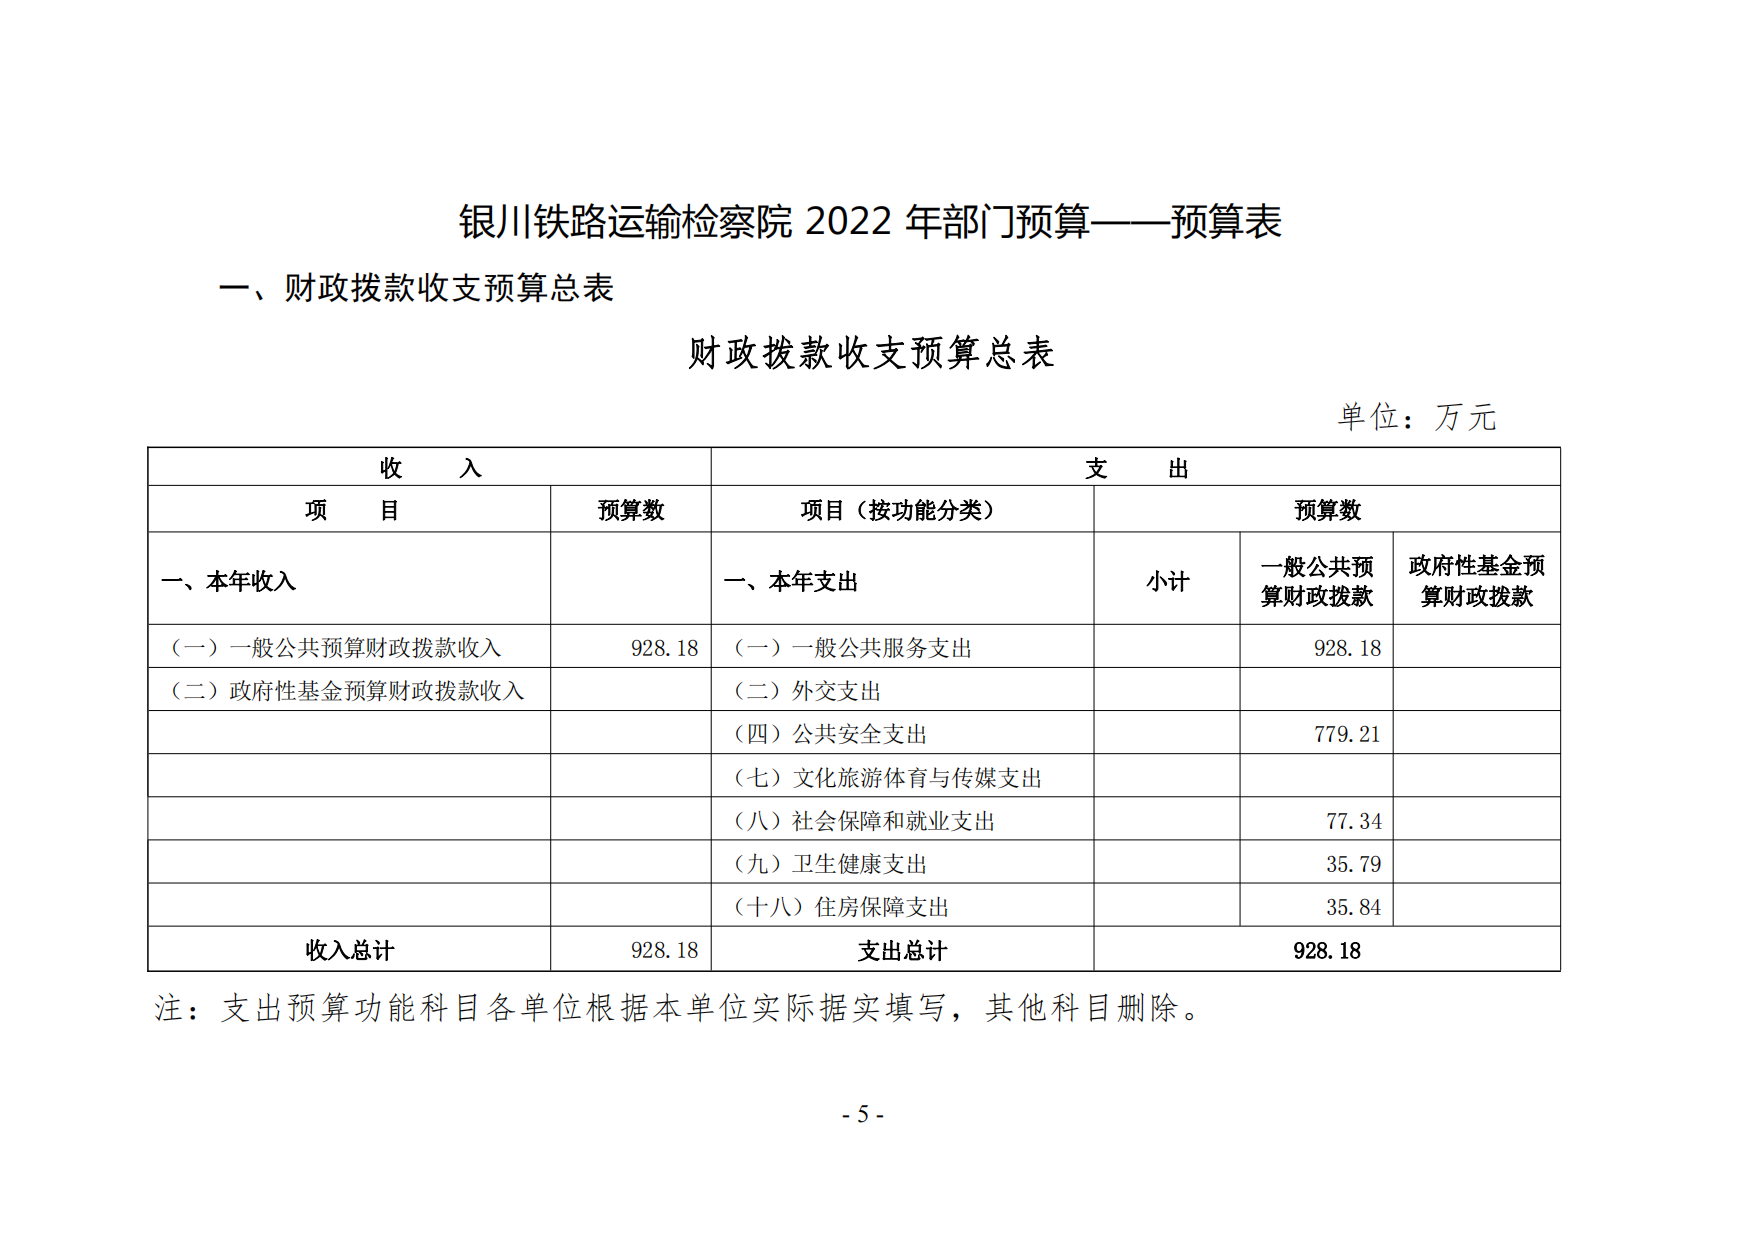 银川铁路运输检察院2022年度预算公开(1)_04.png